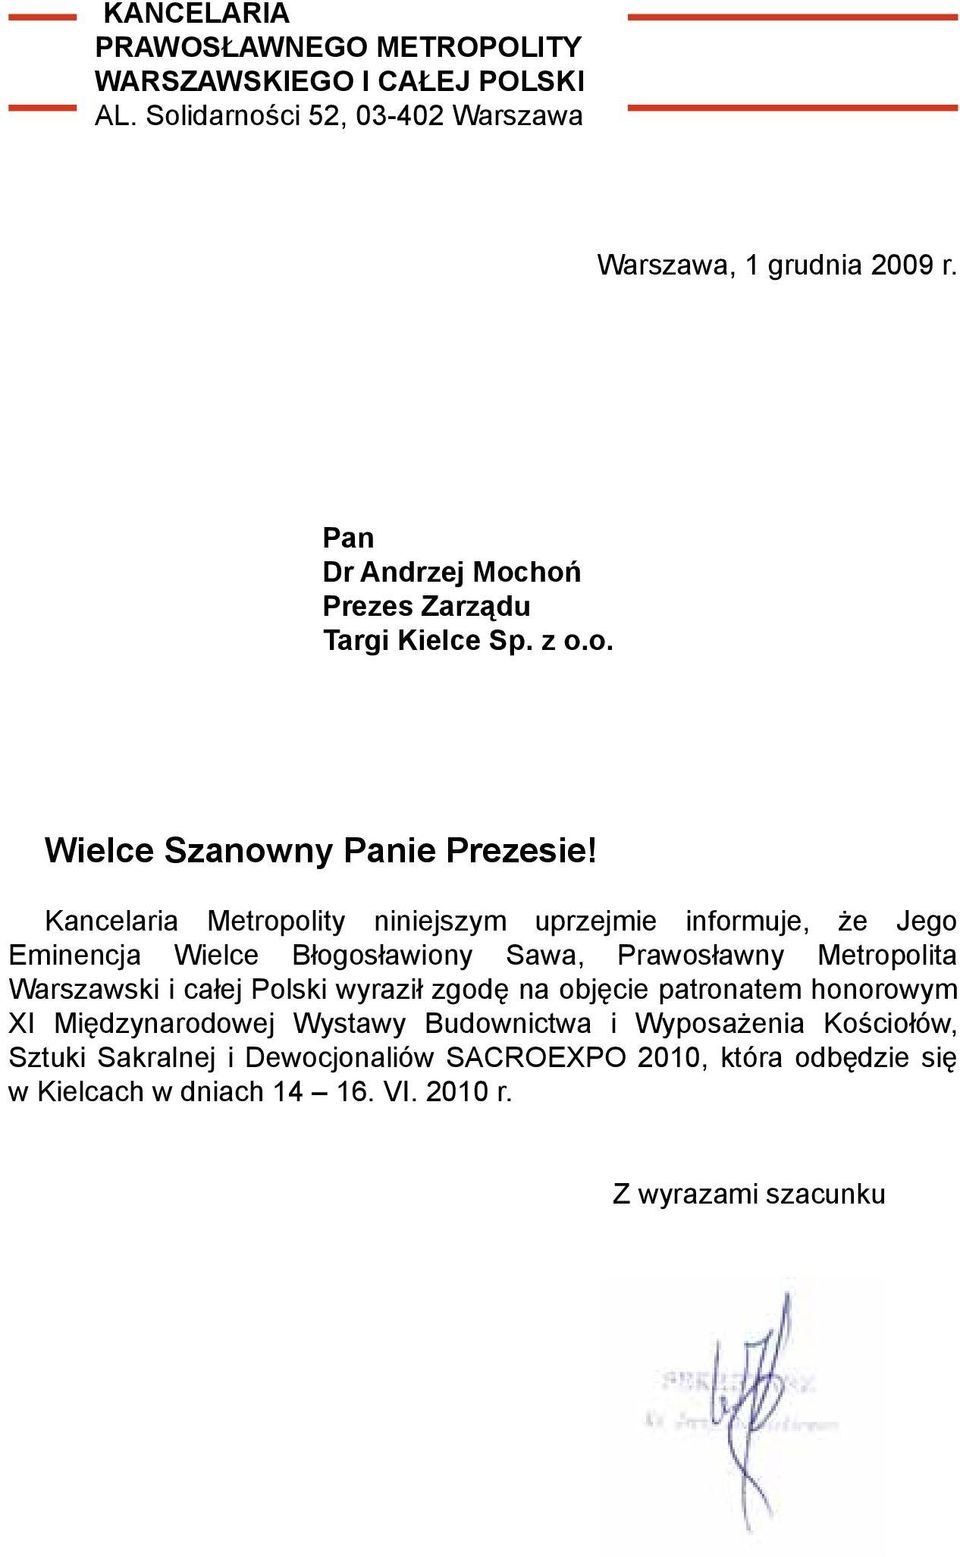 Kancelaria Metropolity niniejszym uprzejmie informuje, że Jego Eminencja Wielce Błogosławiony Sawa, Prawosławny Metropolita Warszawski i całej Polski